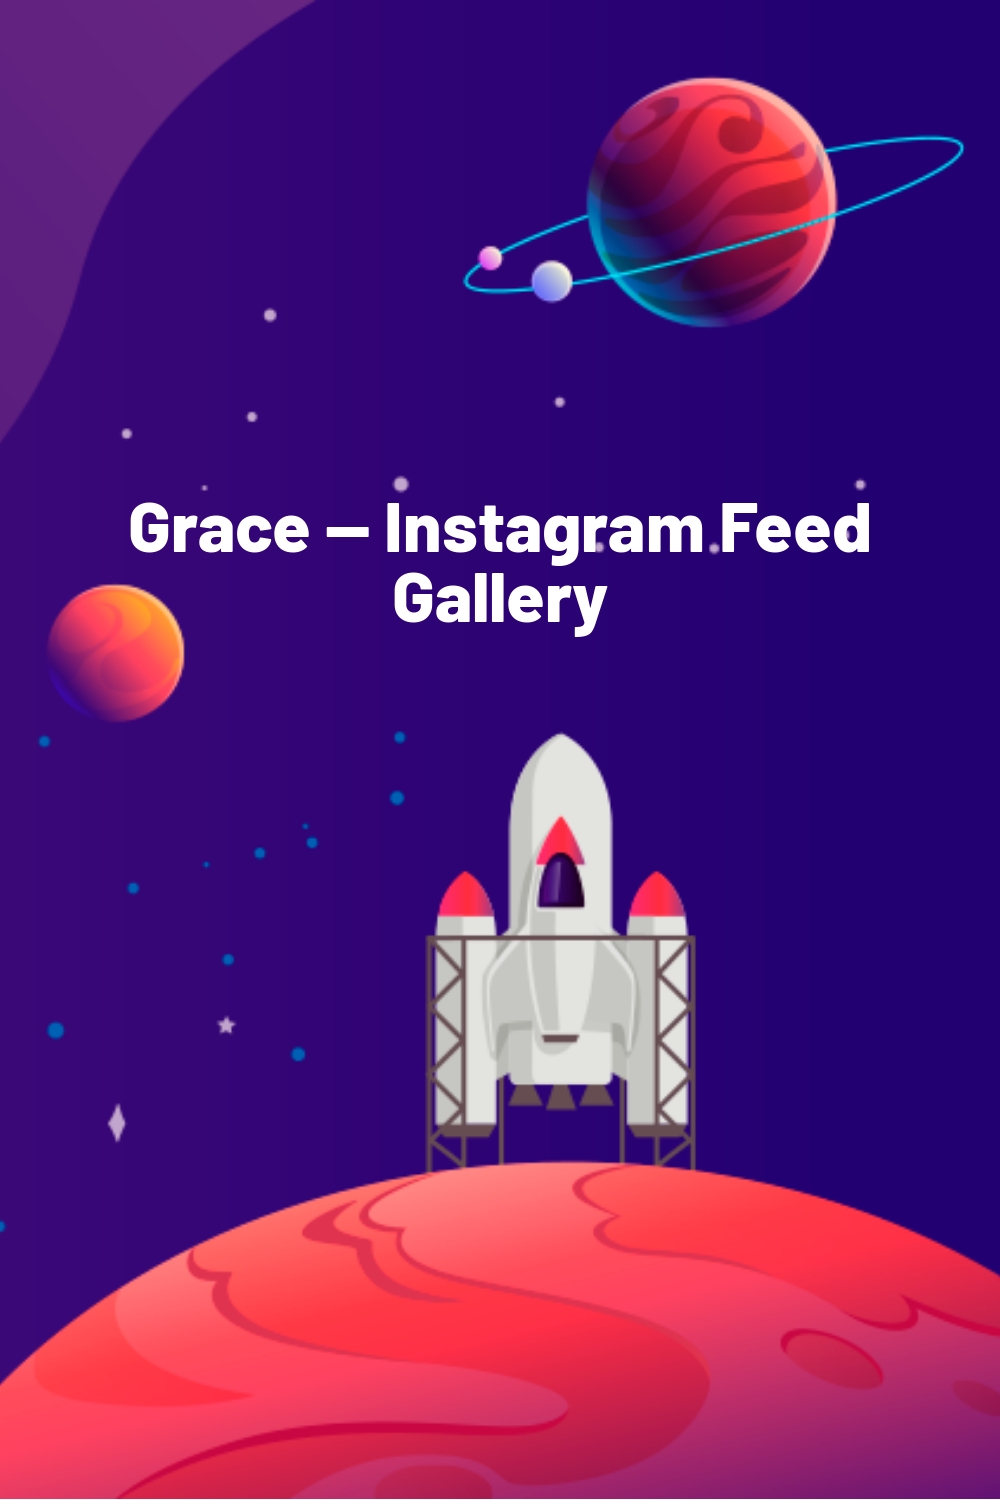 Grace — Instagram Feed Gallery